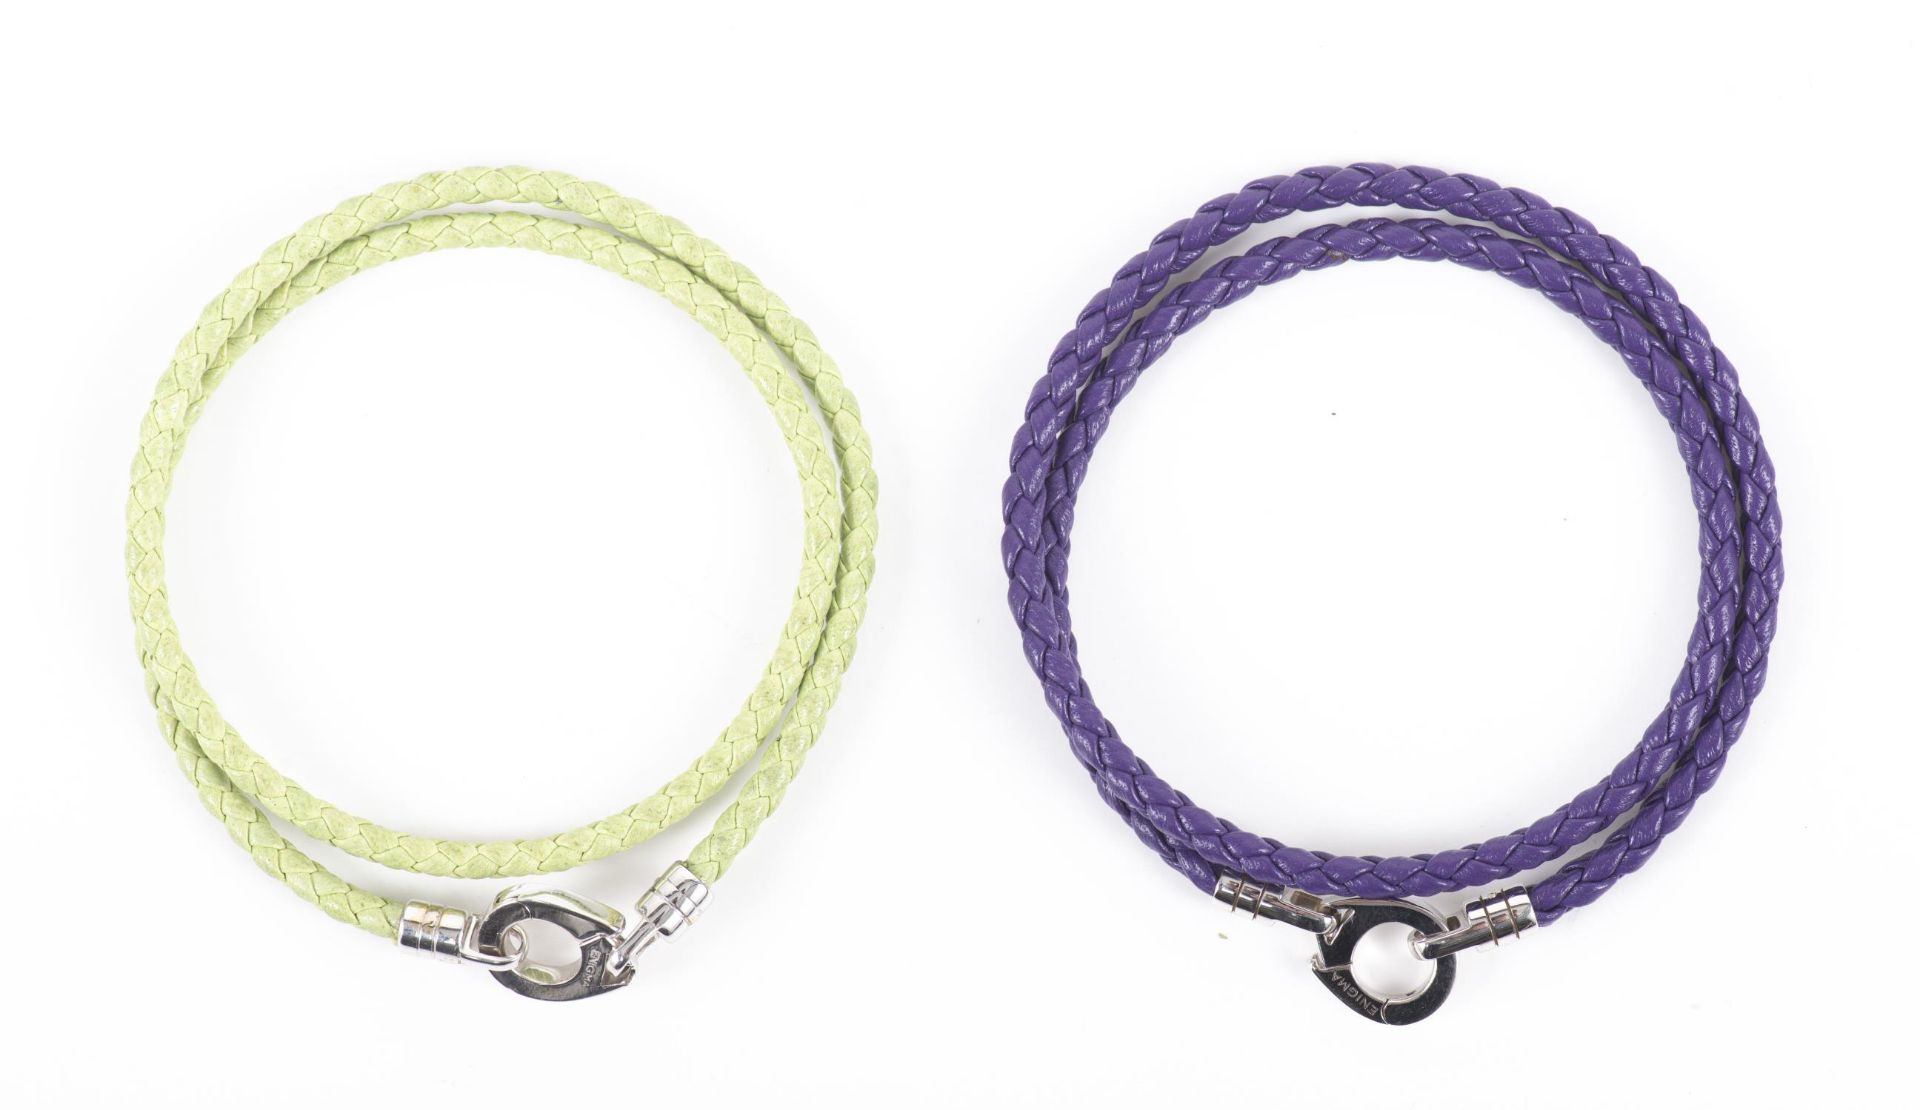 ENIGMA by Gianni Bulgari, paire de bracelets en cuir tressé (divers coloris) et fermoir or gris - Image 6 of 18